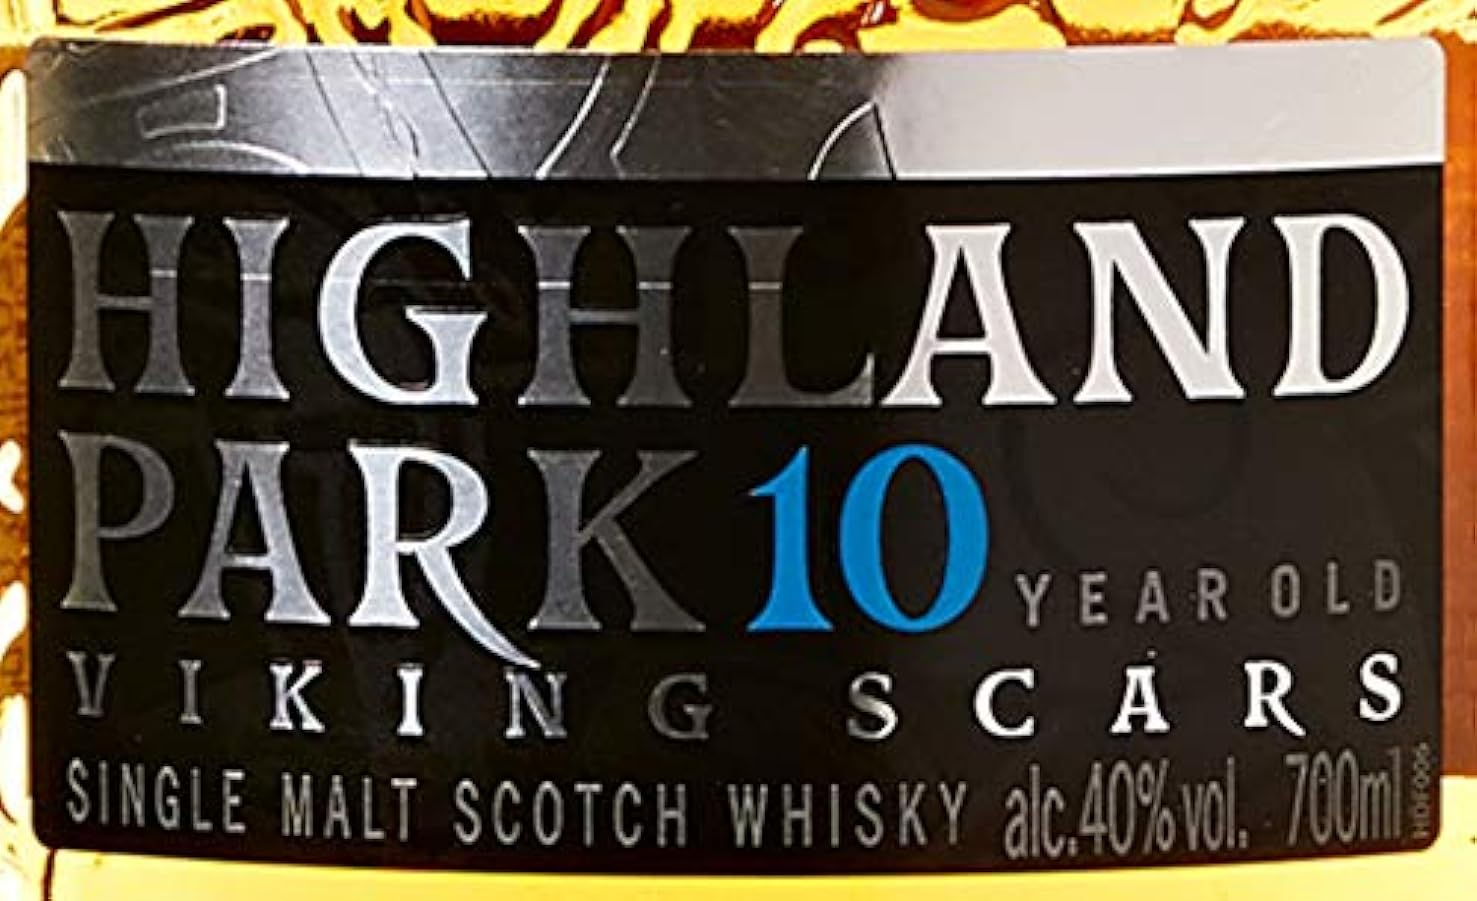 Highland Park 10 YO Single Malt Scotch Whisky - 700 ml 613760329